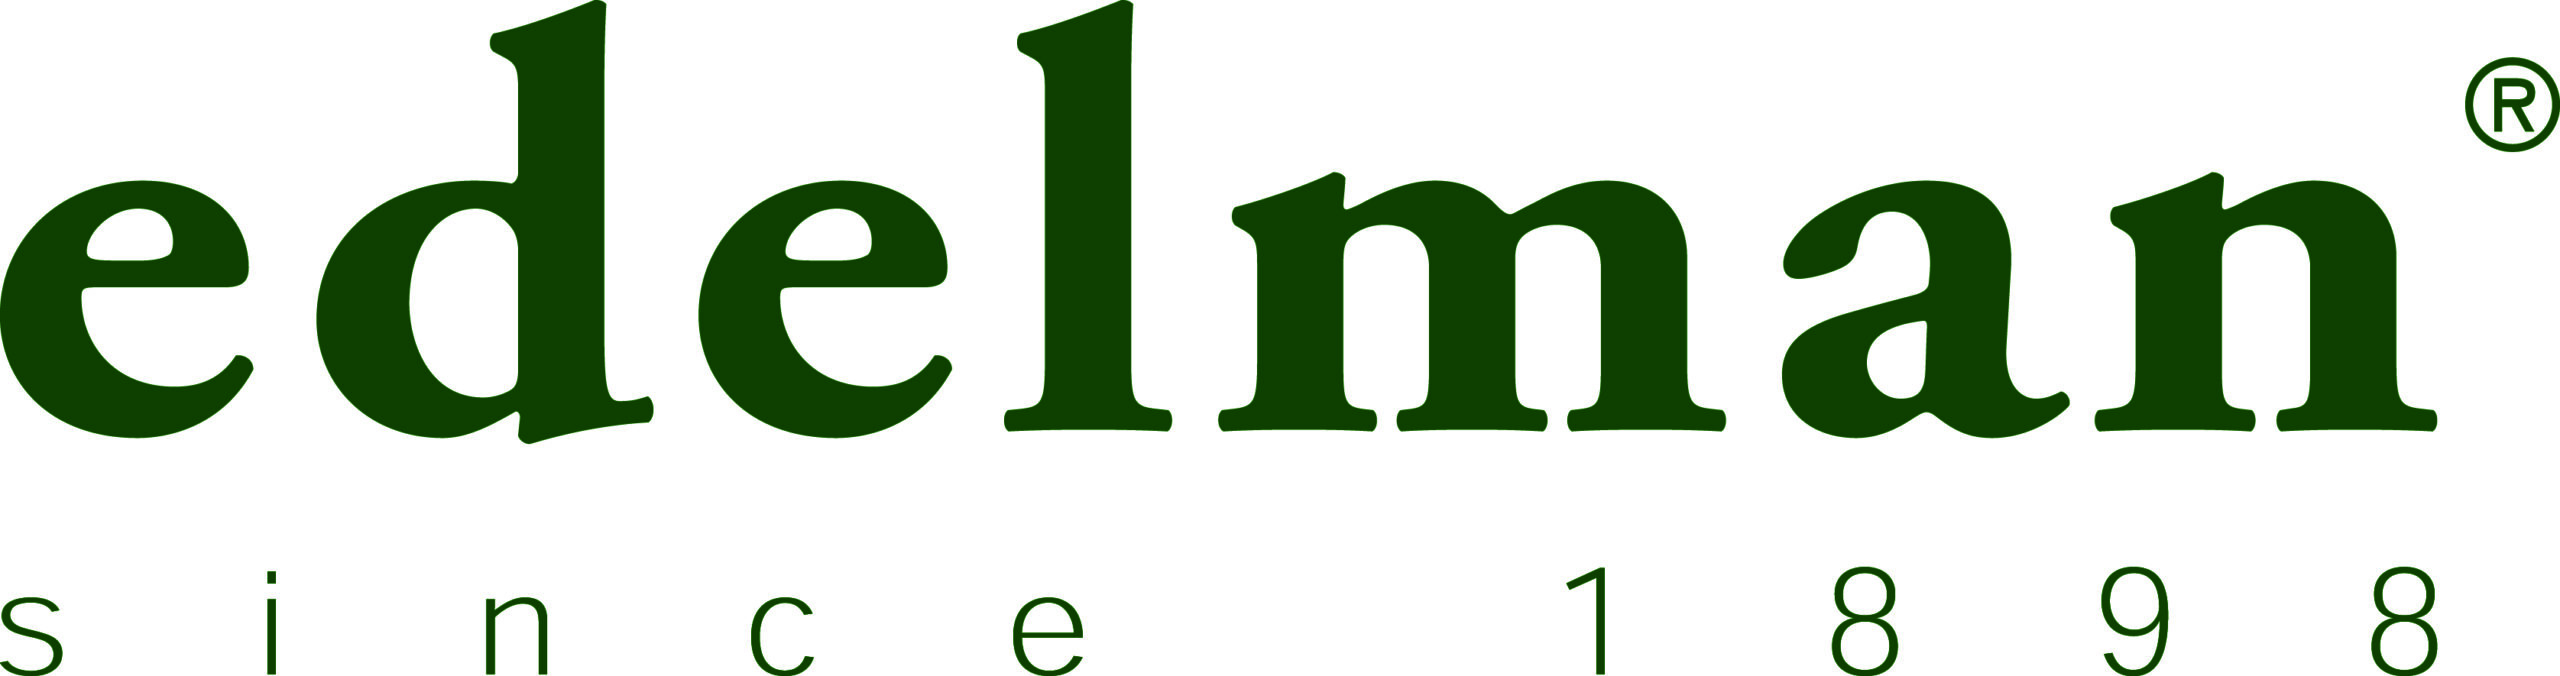 Edelman_logo